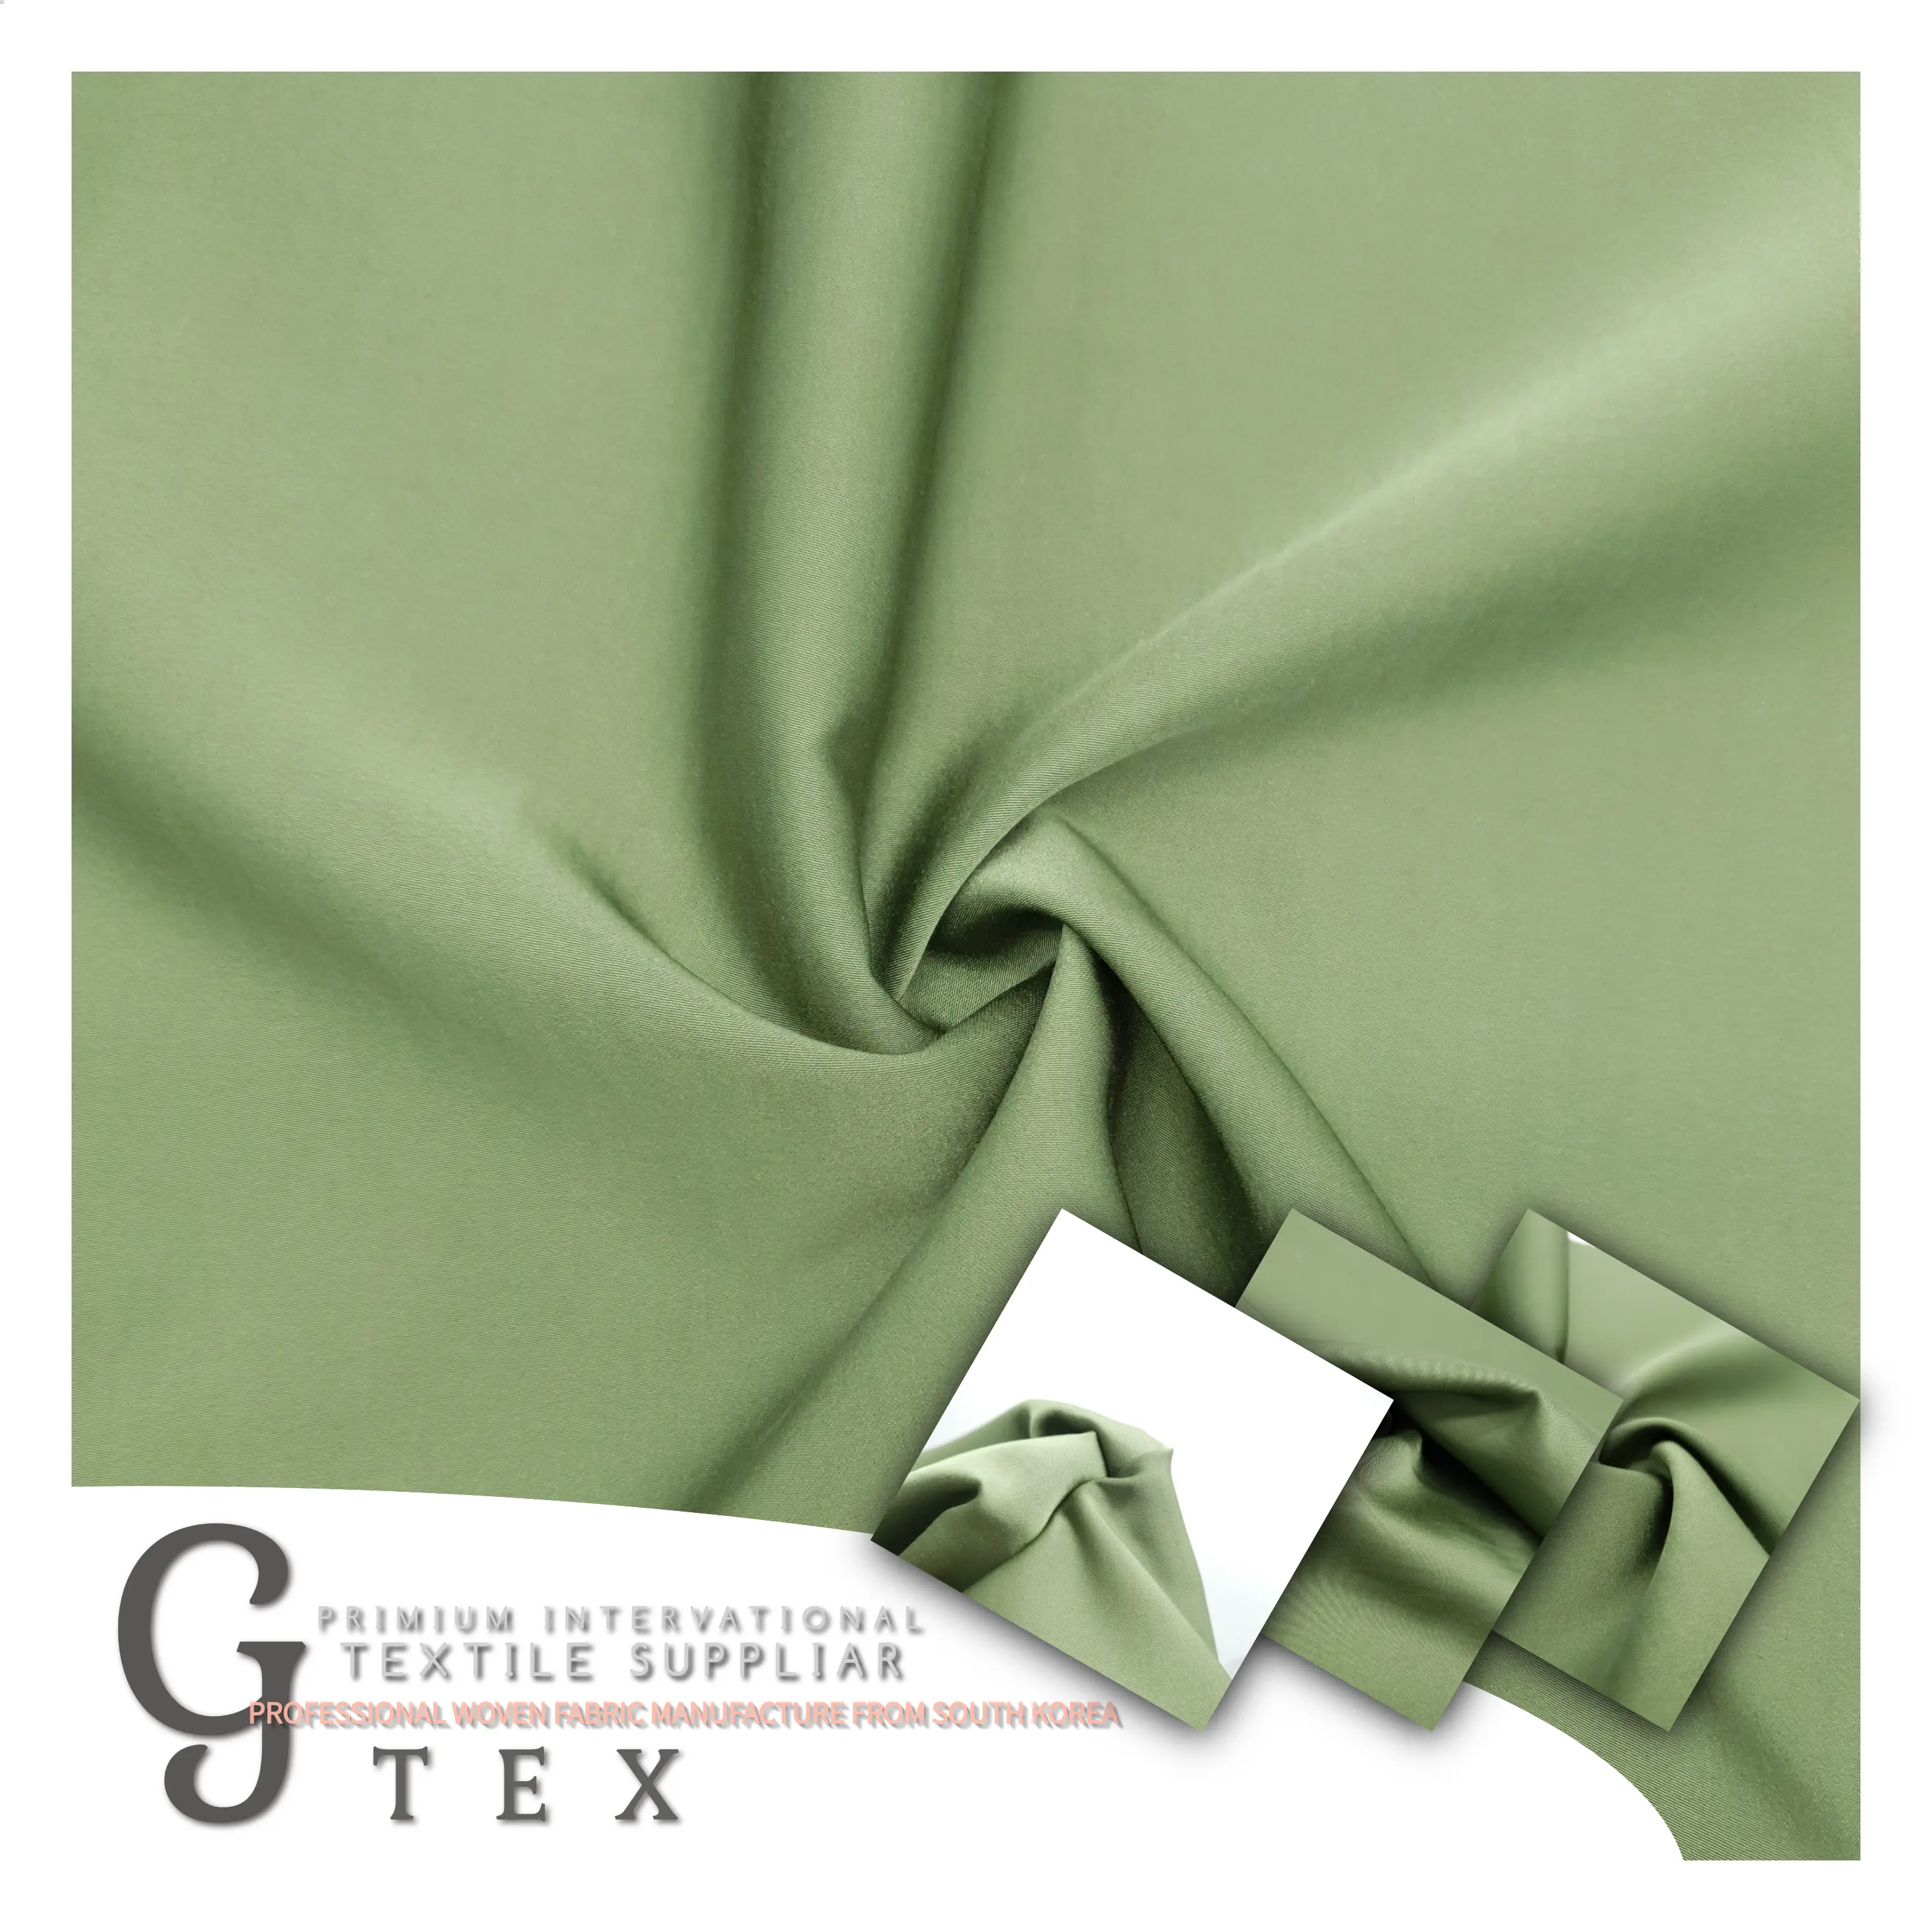 G tex feita em poliéster 100%, tecido tecido p/d da qualidade premium da coreia para mulheres vestido, saia, camisa, etc